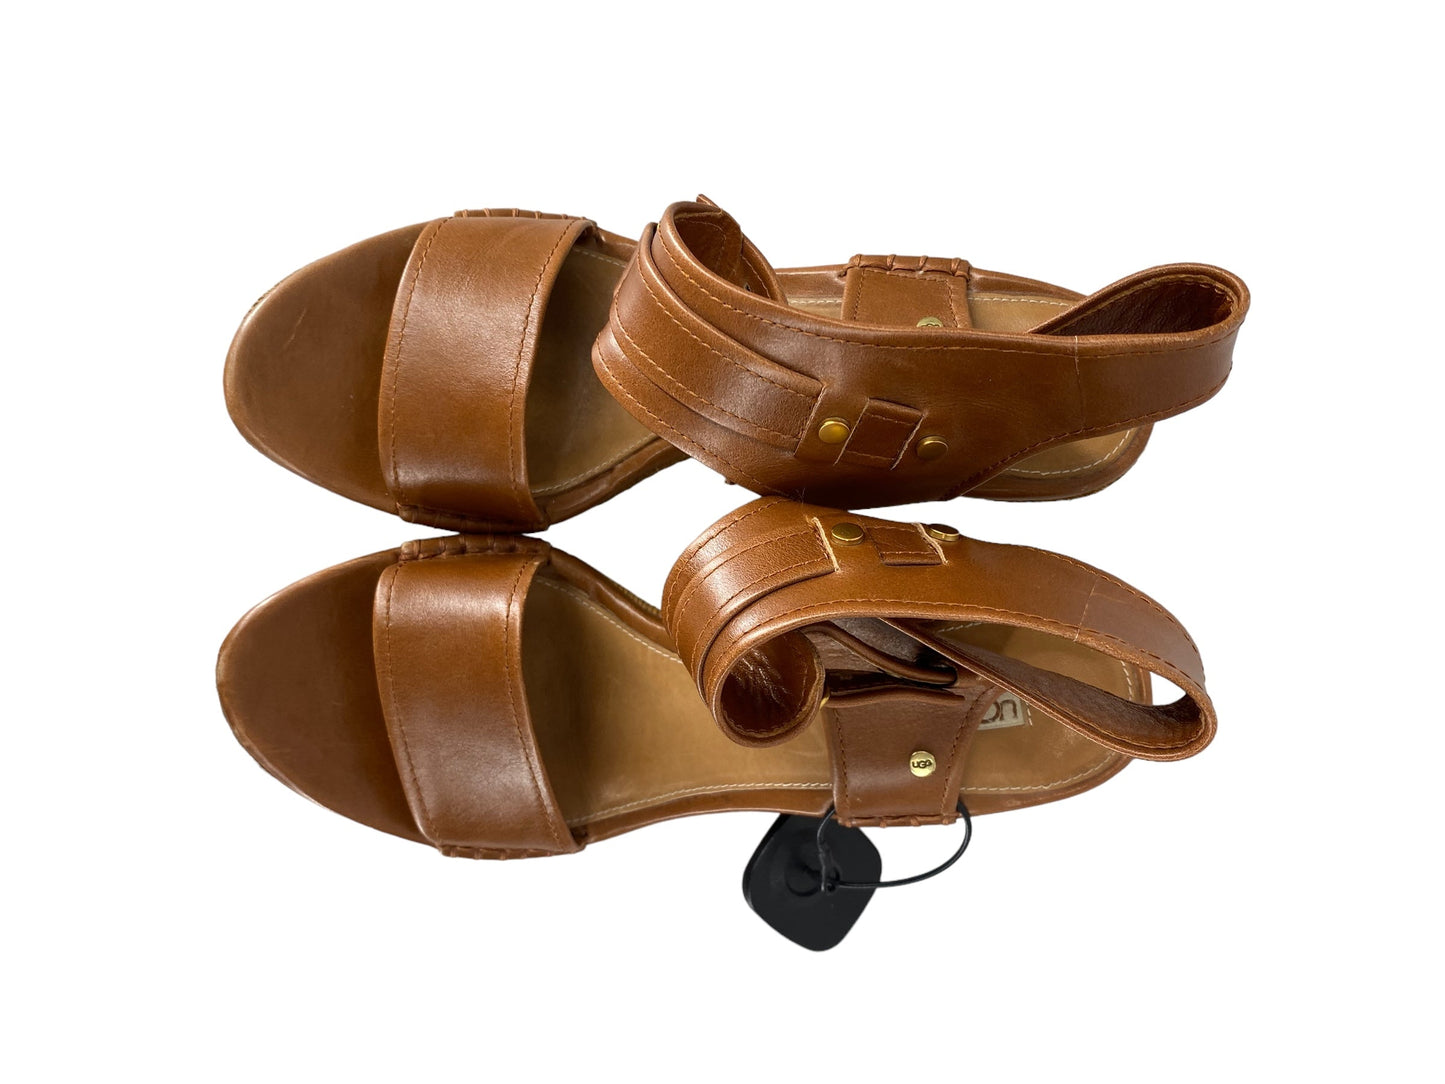 Brown Sandals Heels Platform Ugg, Size 10